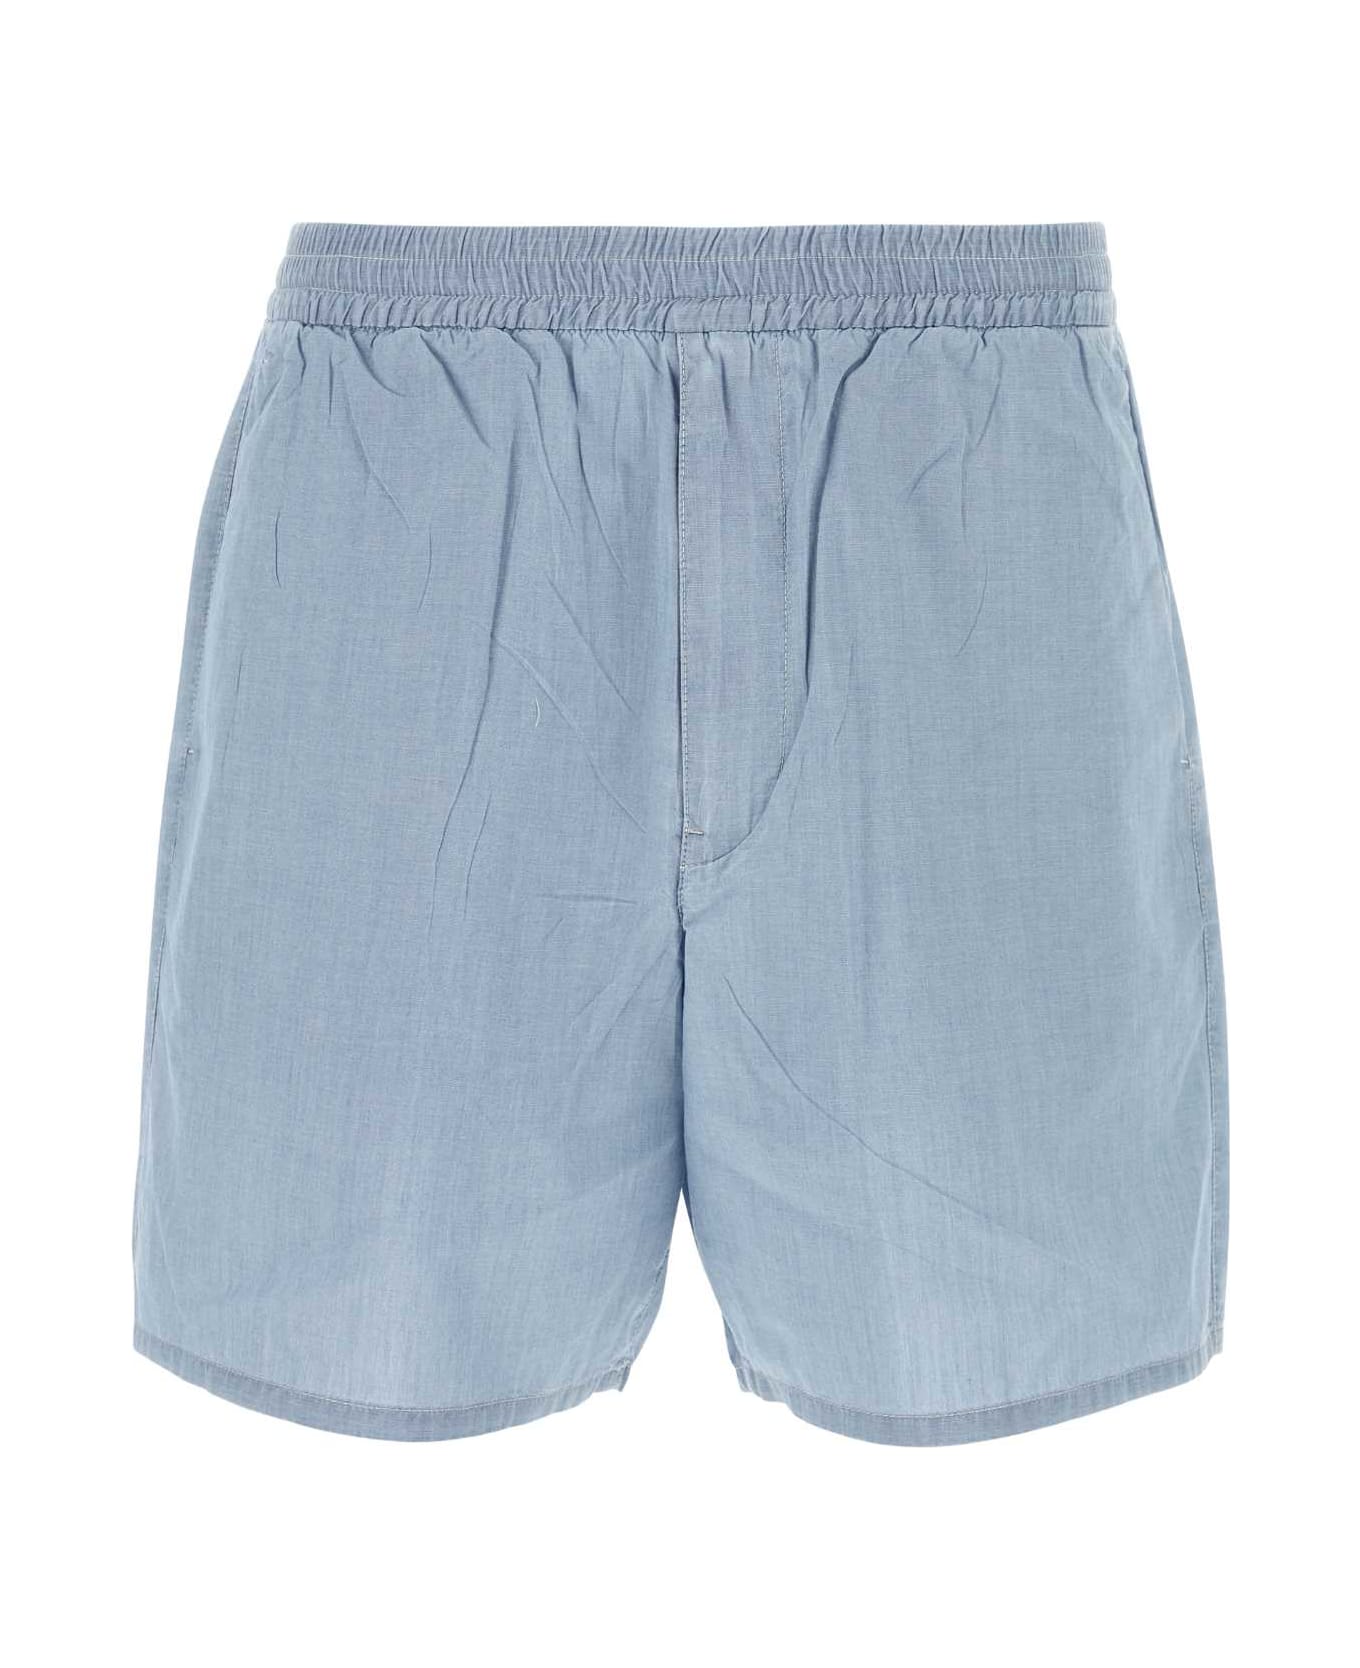 Prada Light Blue Cotton Bermuda Shorts - SKY